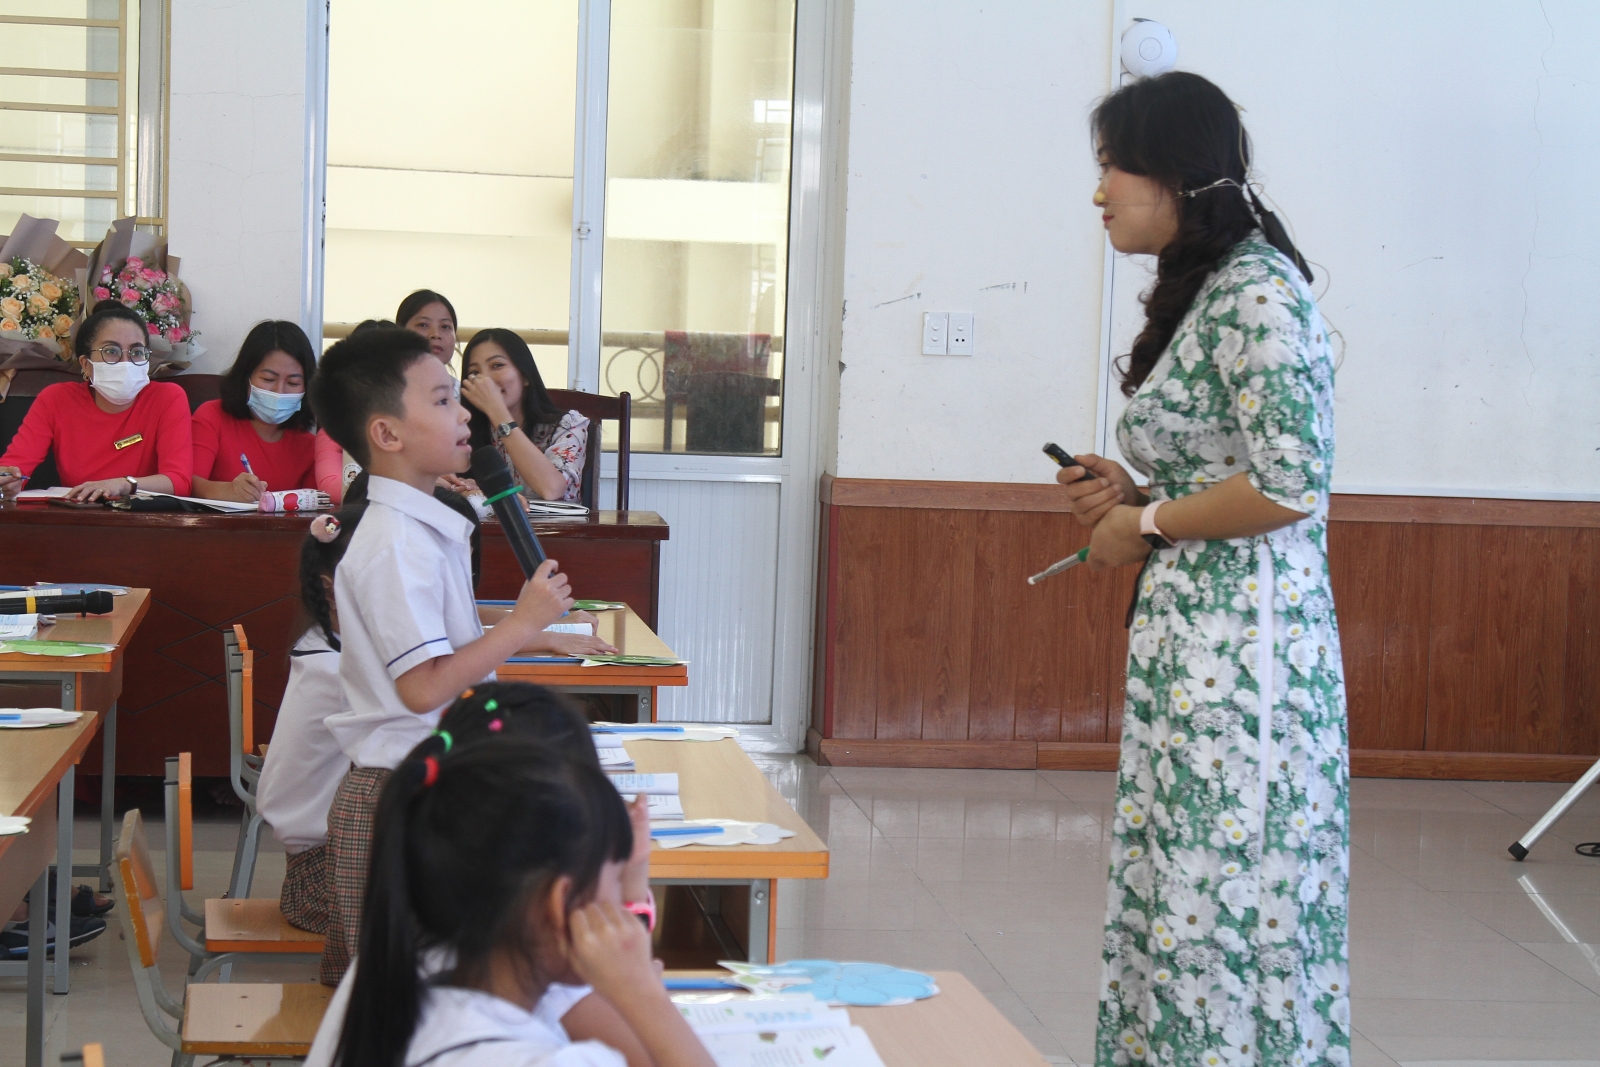  Hải Phòng: Để có những bài học môn Tiếng Việt lớp 2 bổ ích - Ảnh minh hoạ 4